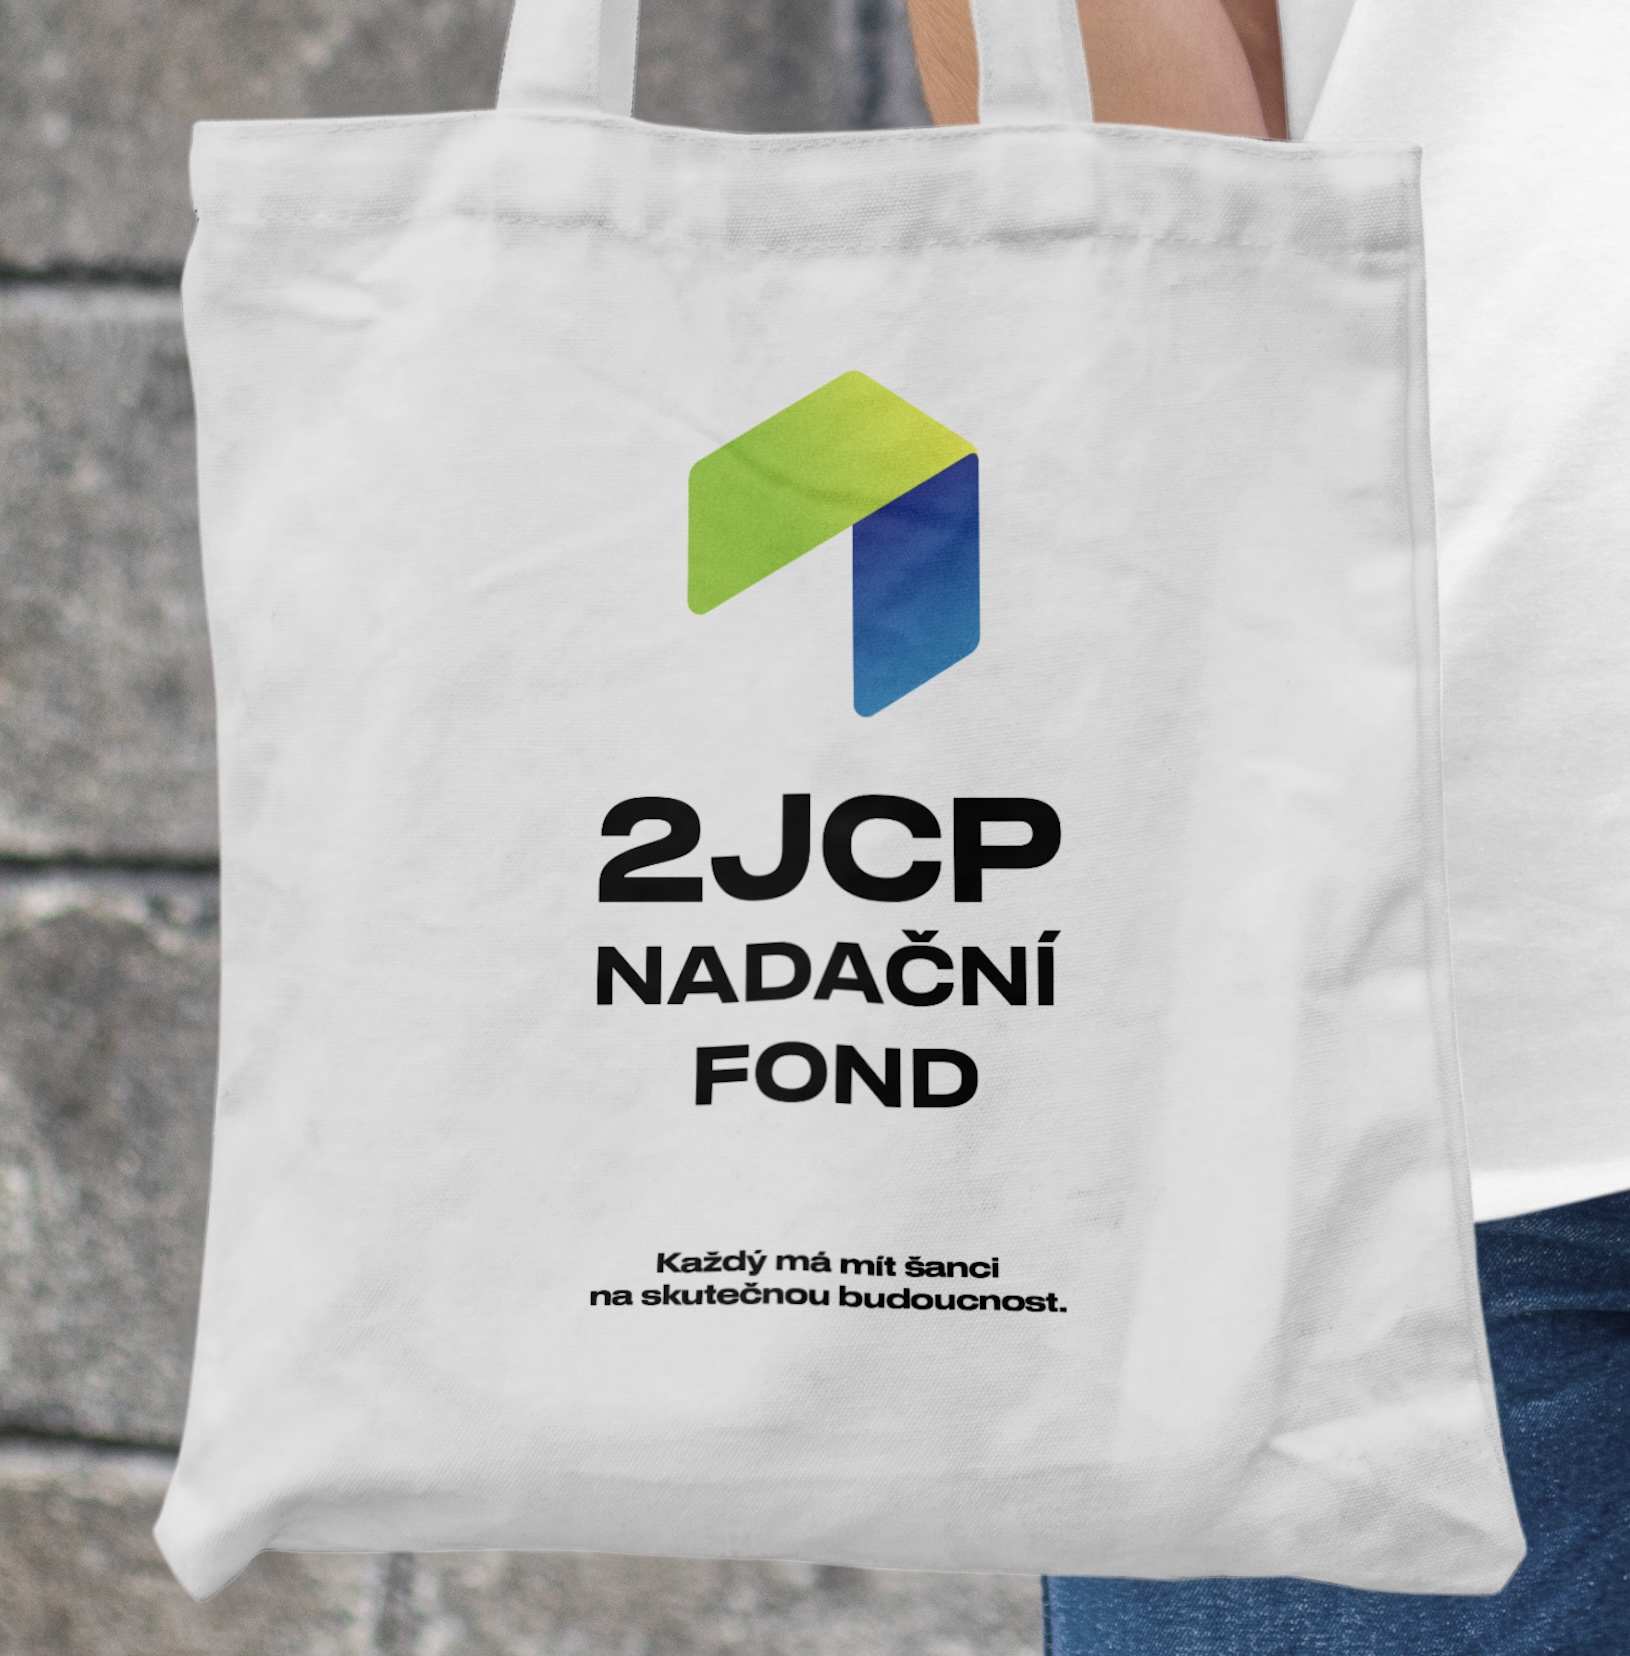 Obrázek článku Nadační fond 2JCP - změna zaměření a nové logo